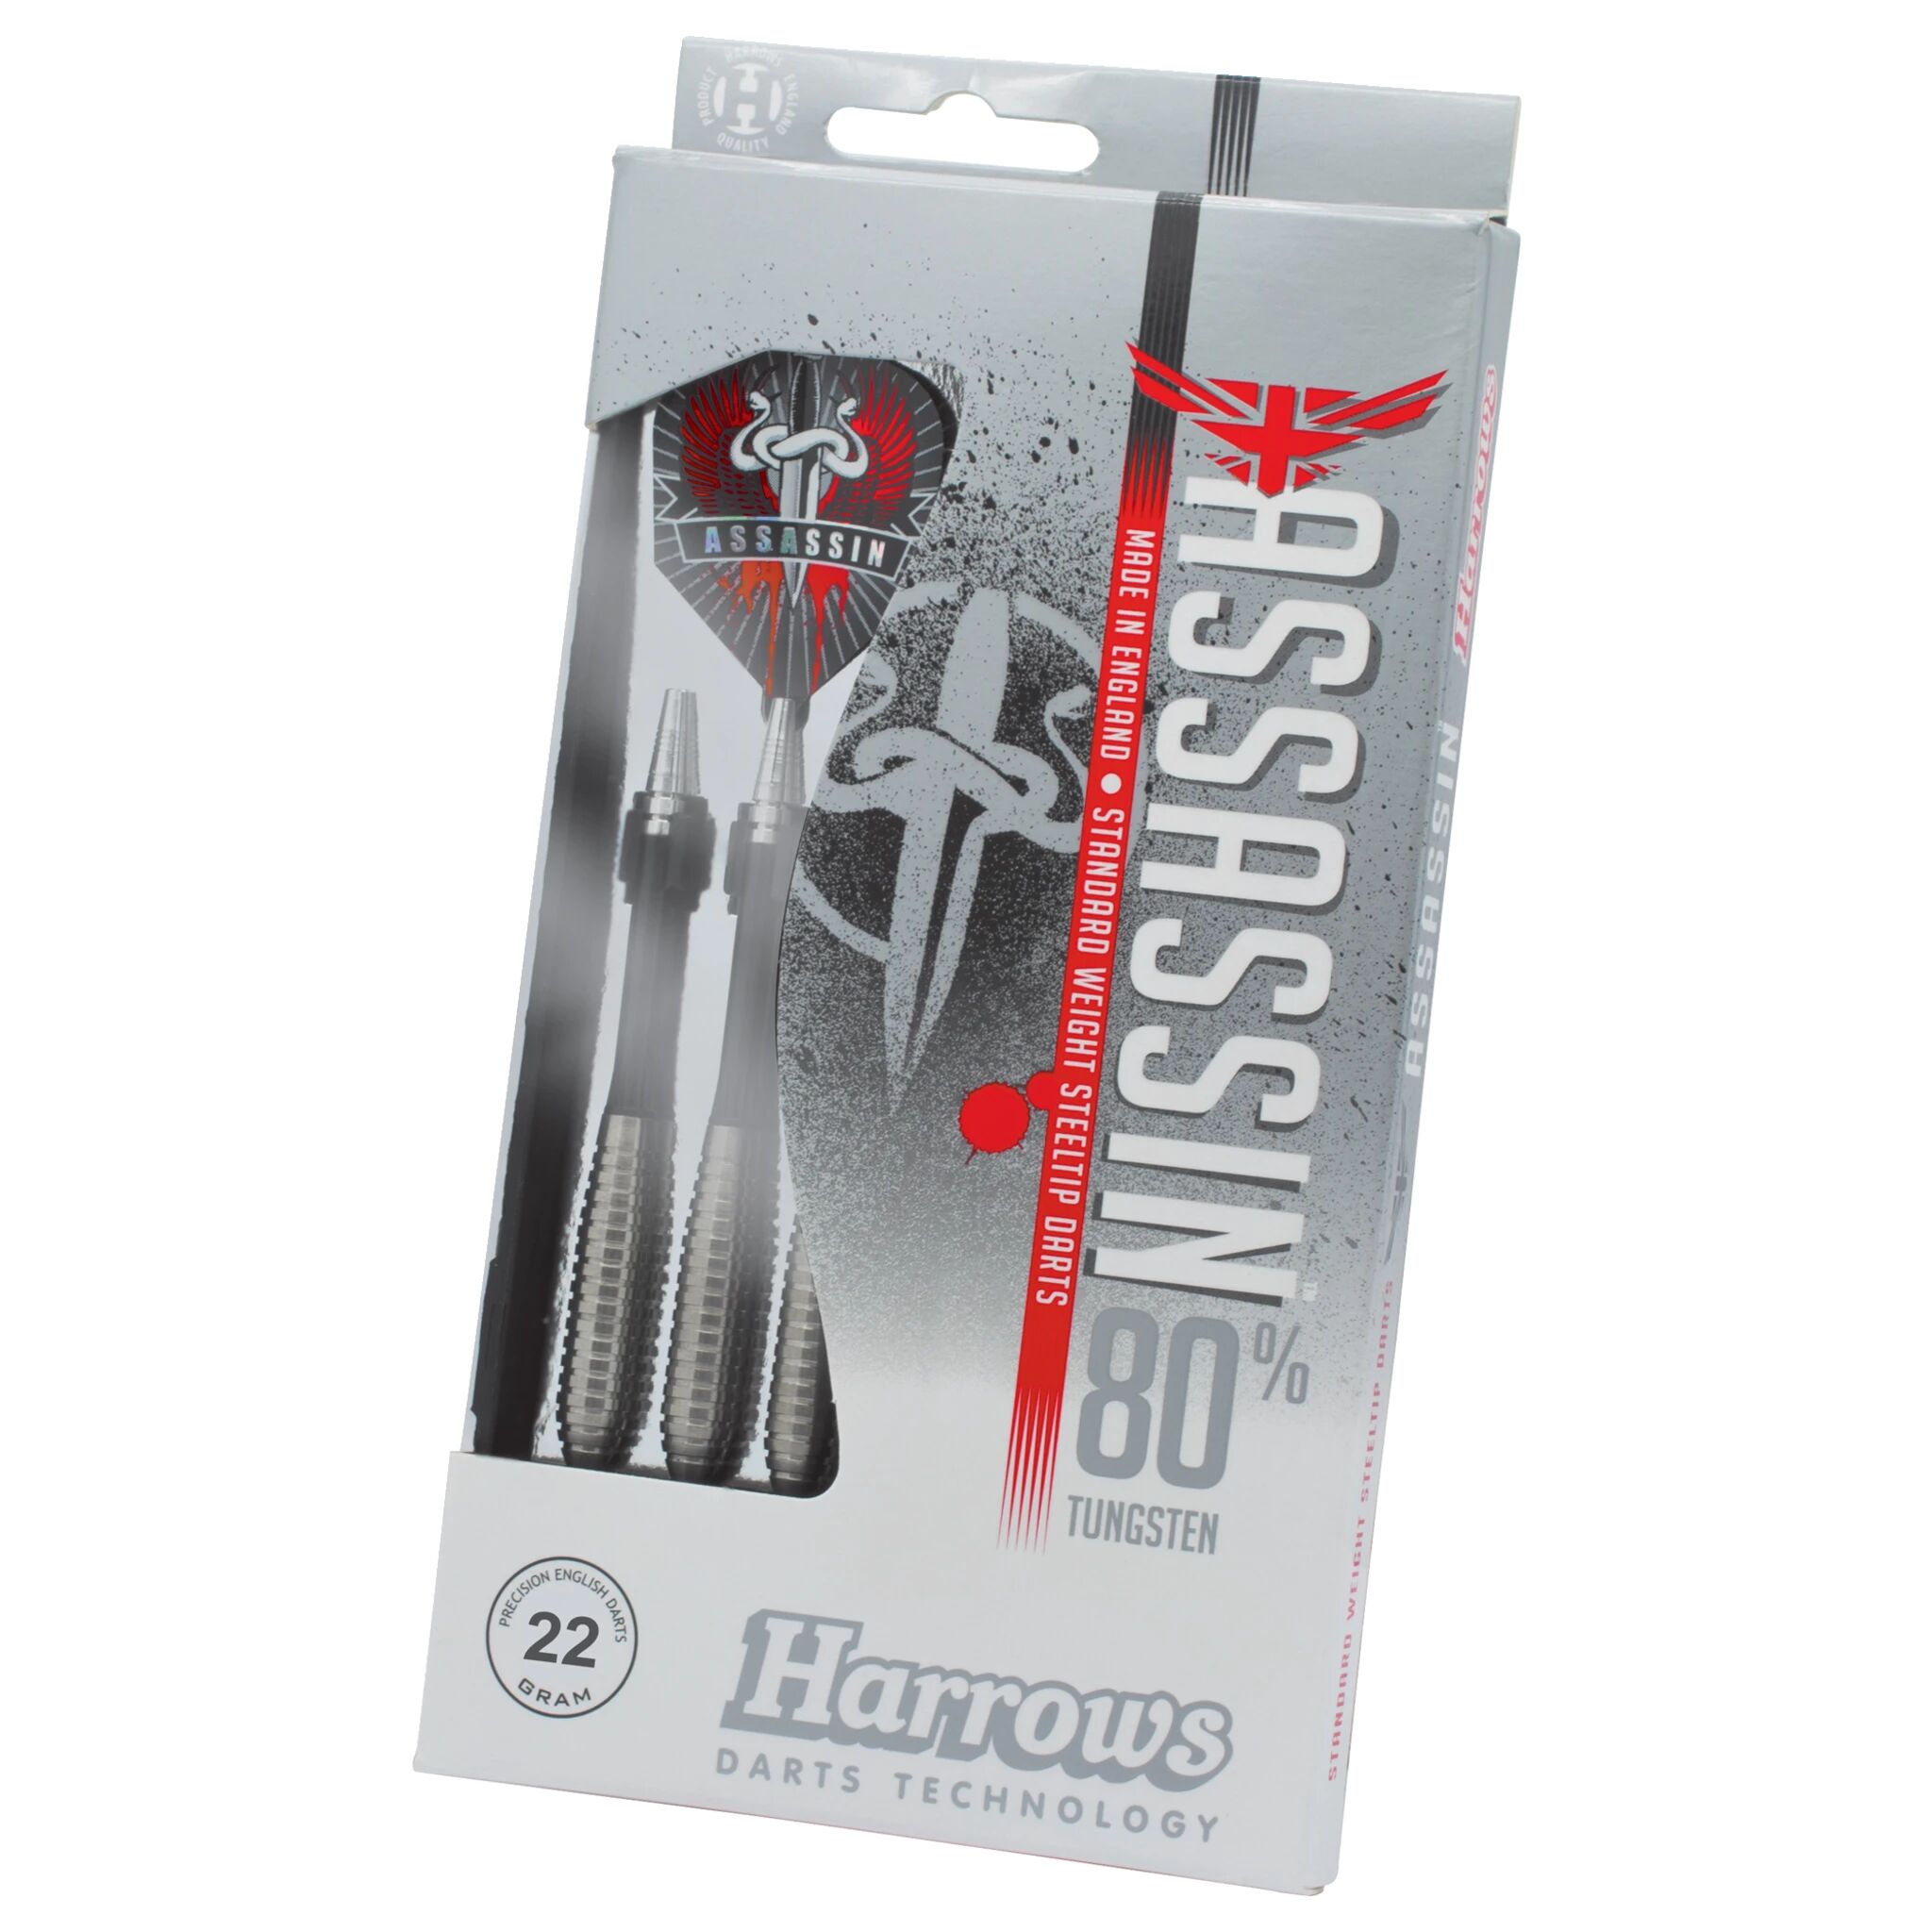 Harrows Assassin, dartpiler 24g Tungsten